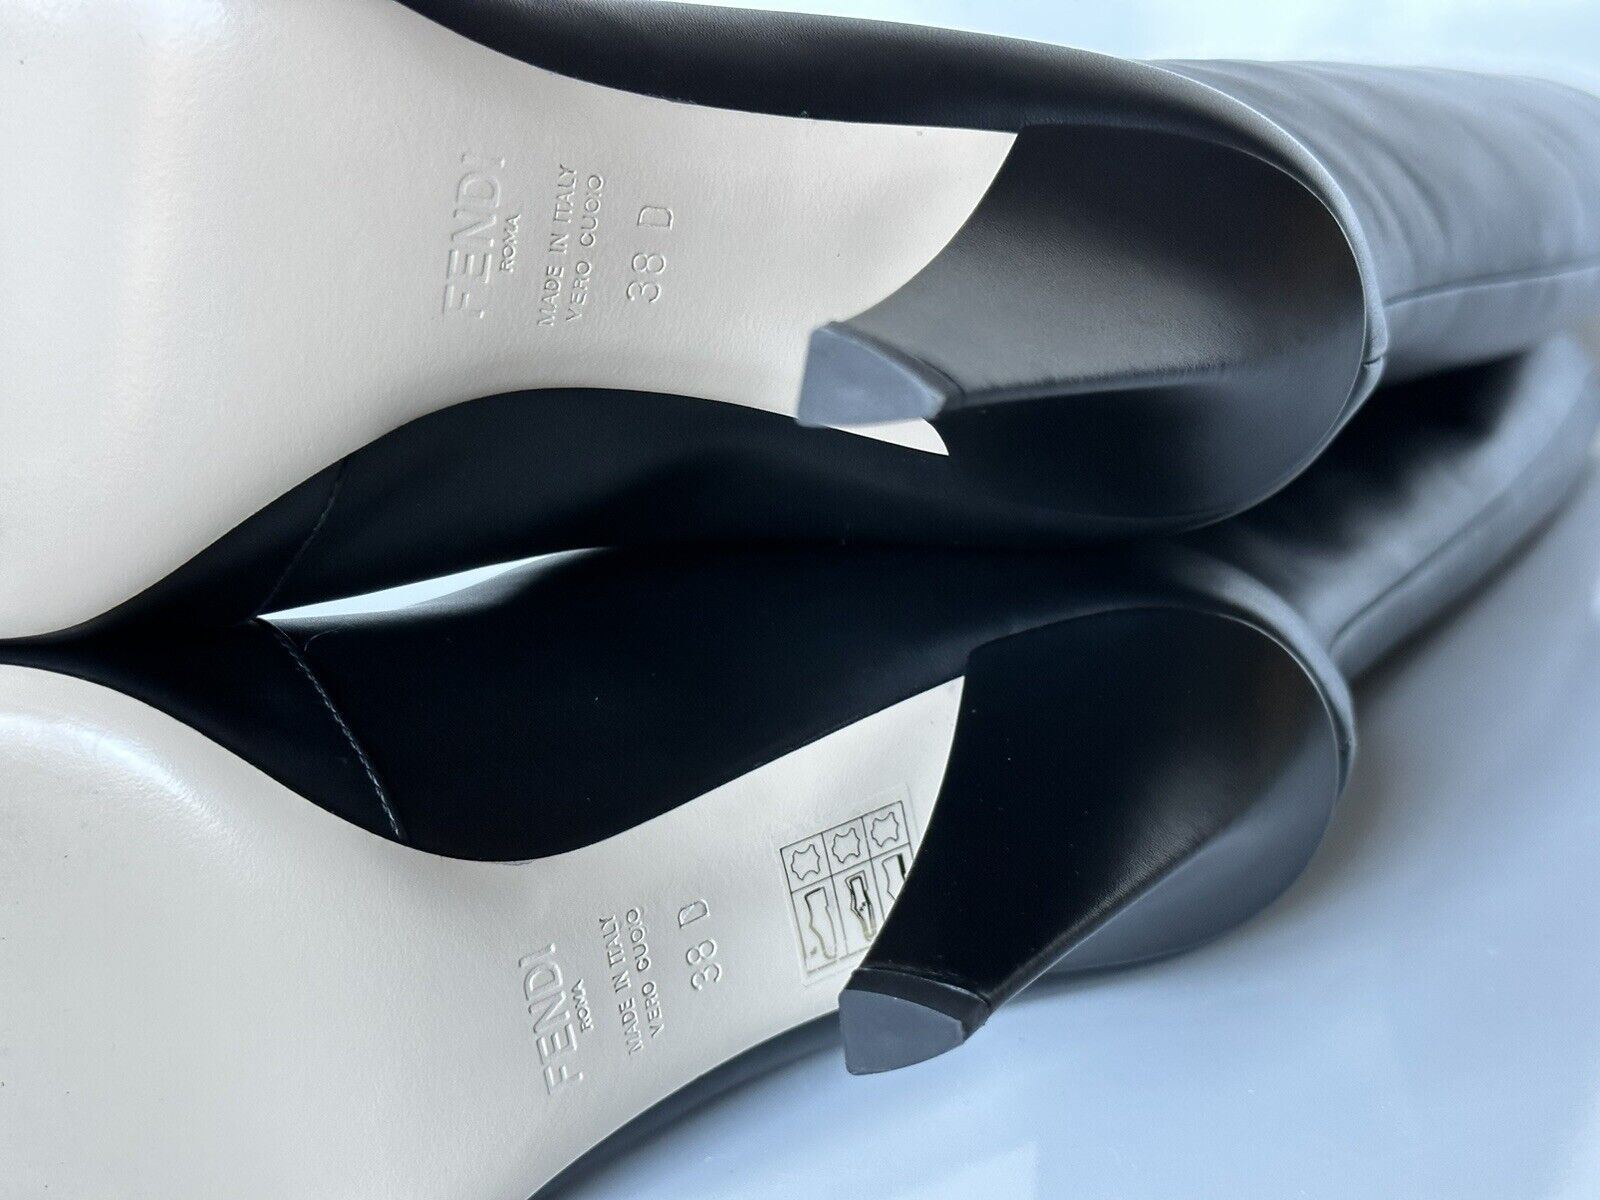 NIB 1550 долларов США Черные кожаные сапоги до колена Fendi Karligraphy 8 US (38 EU) 8W8223 